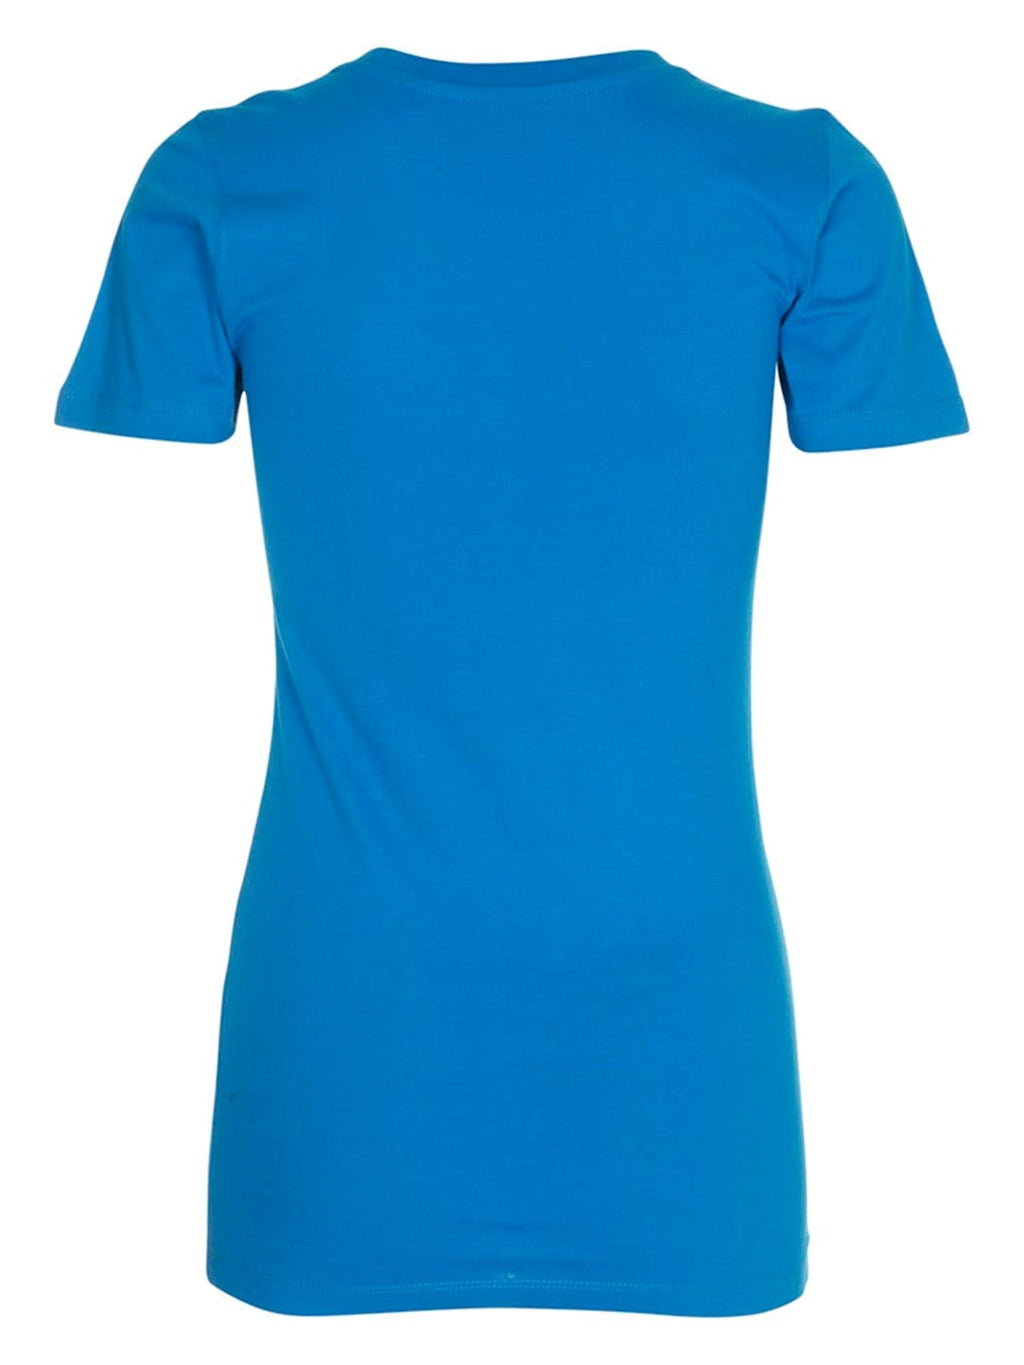 Eingebautes T-Shirt-Torquoise Blau